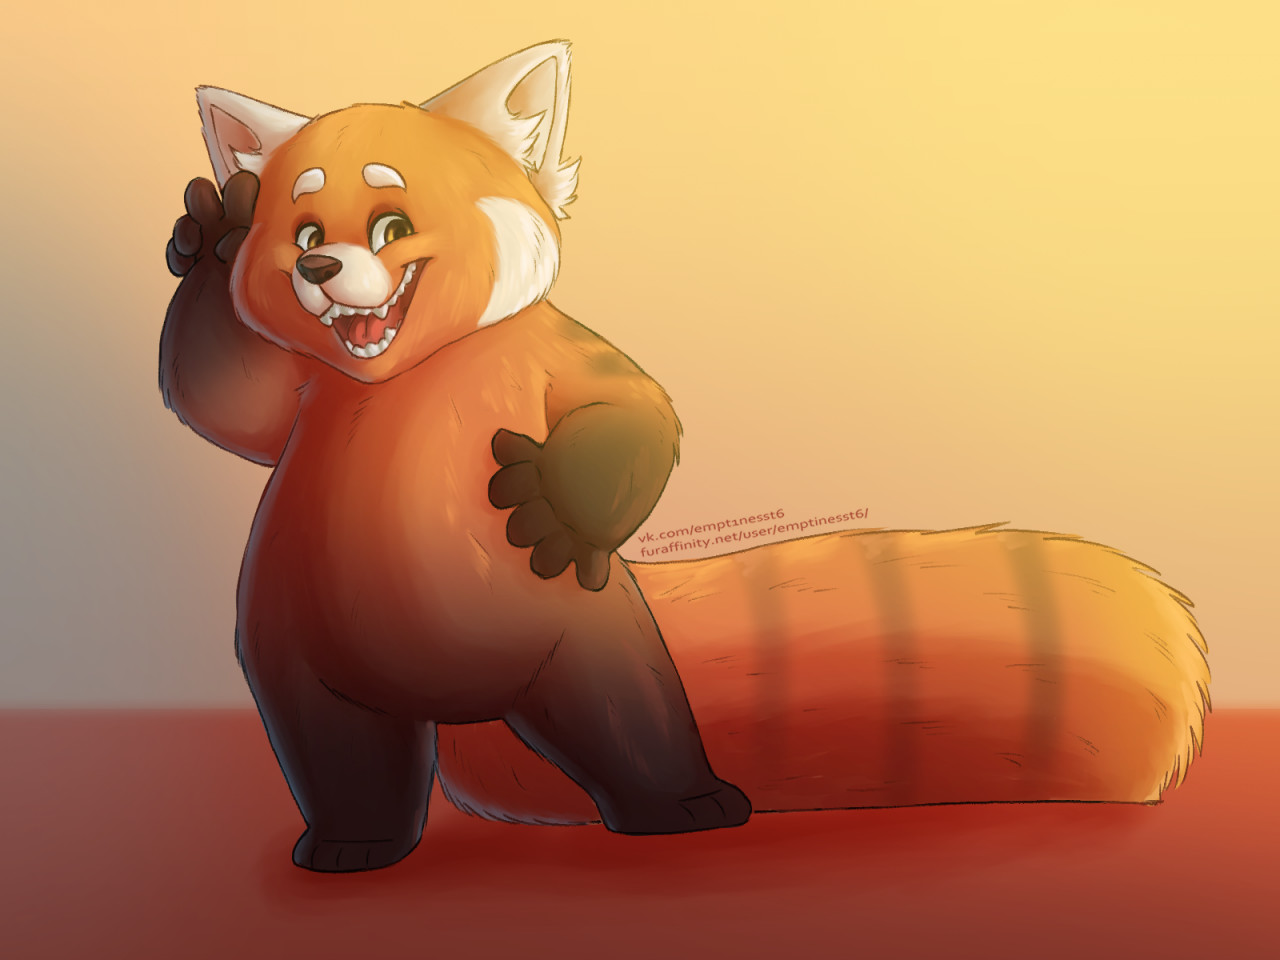 Red panda Meilin Lee. by emptinesst6 -- Fur Affinity [dot] net